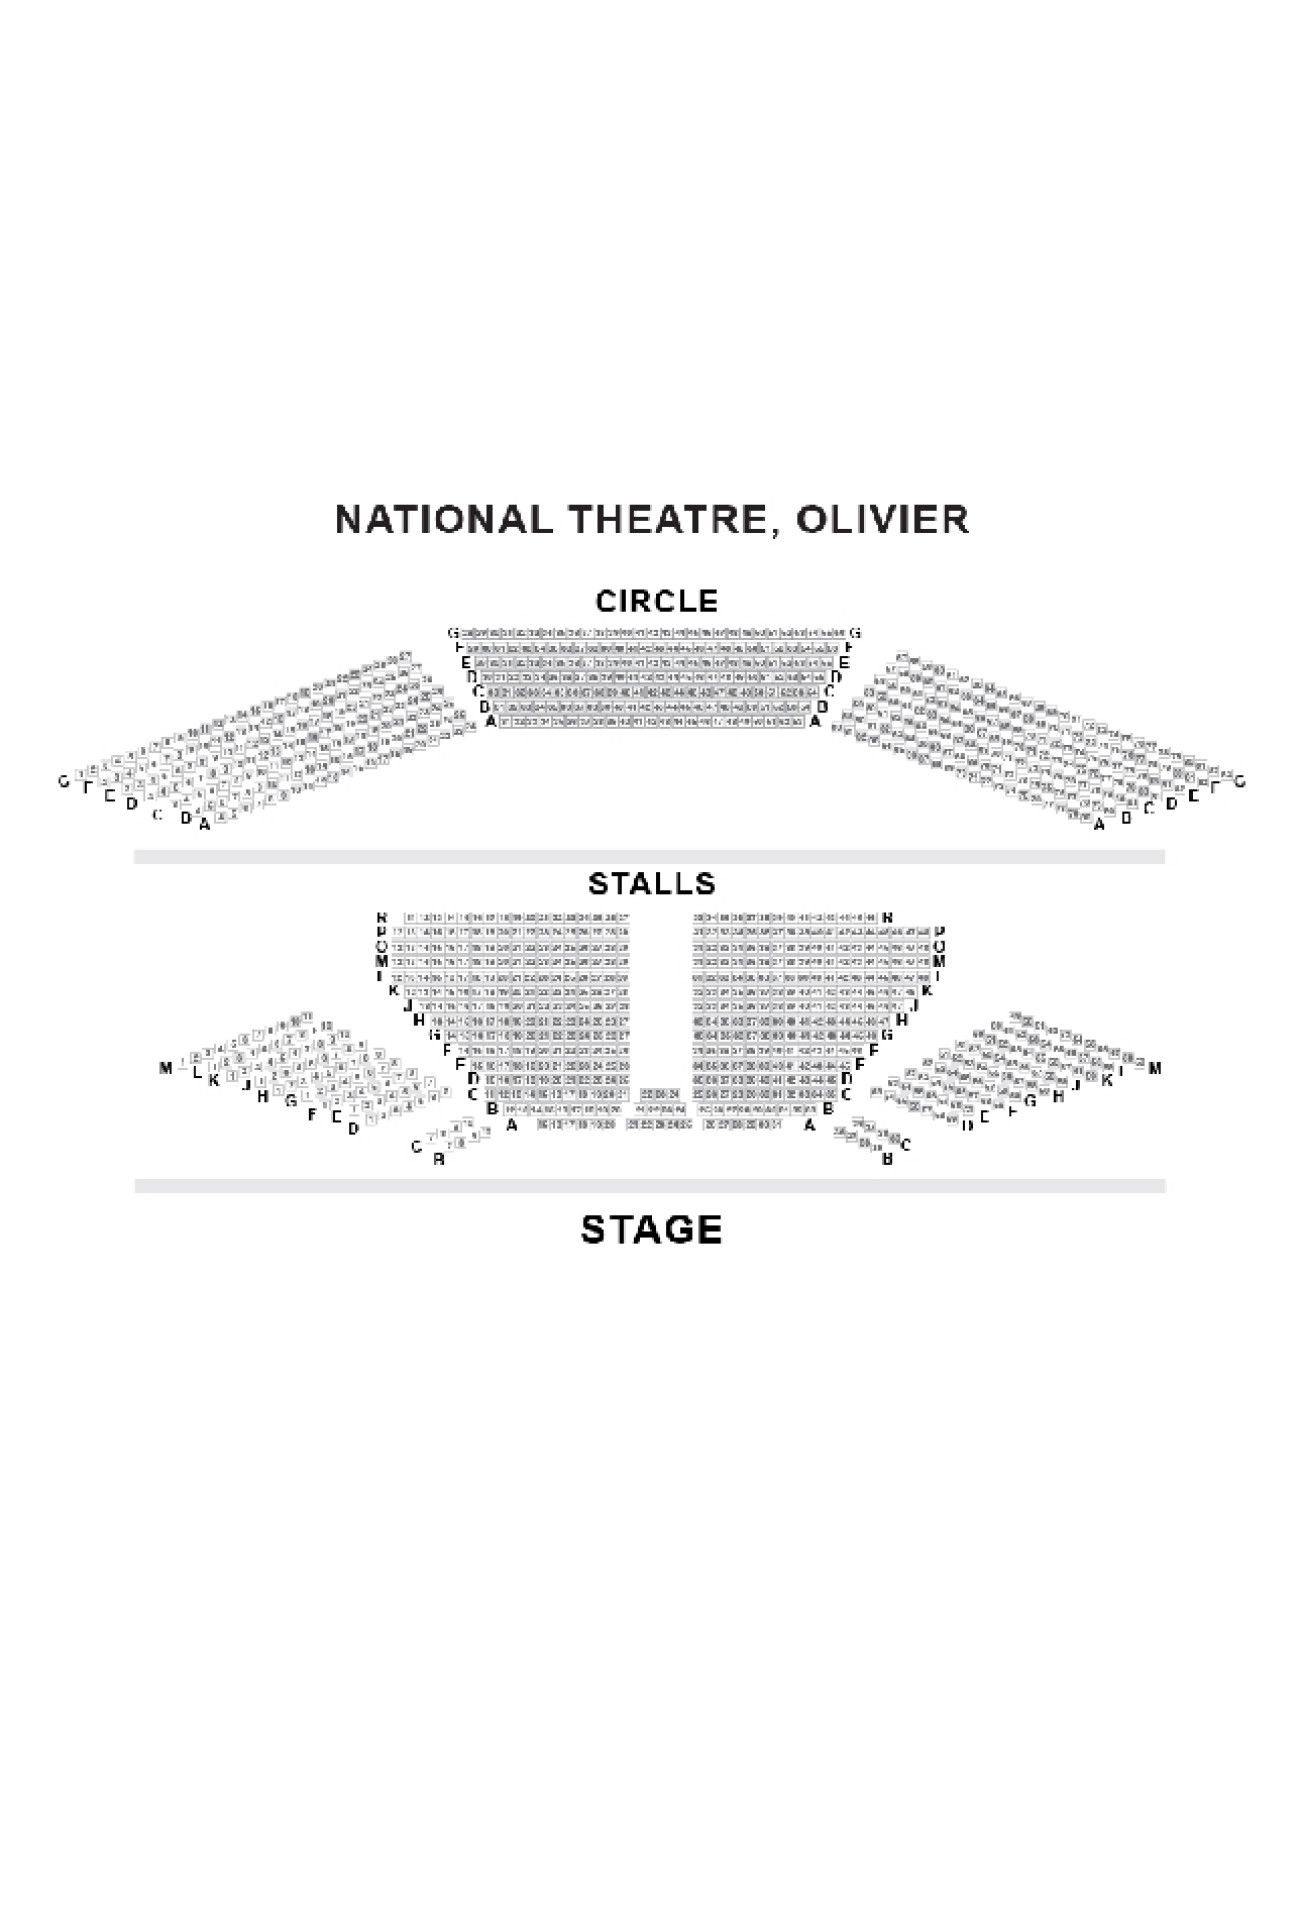 Olivier Theatre (National Theatre) Sitzplan